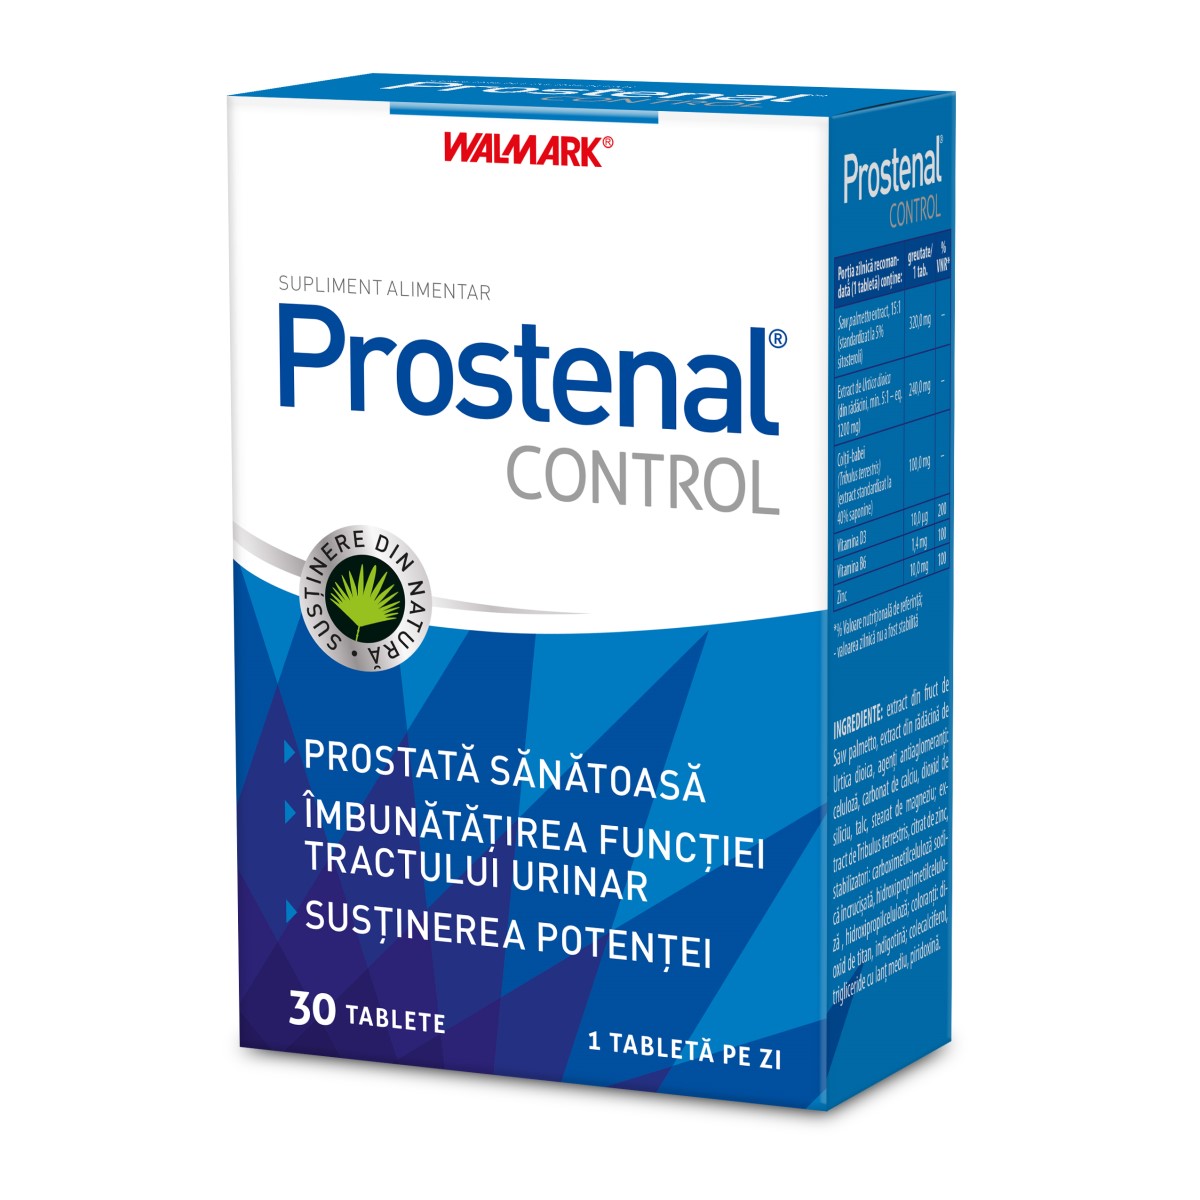 Prostata - Prostenal Control, 30 tablete, Walmark, sinapis.ro